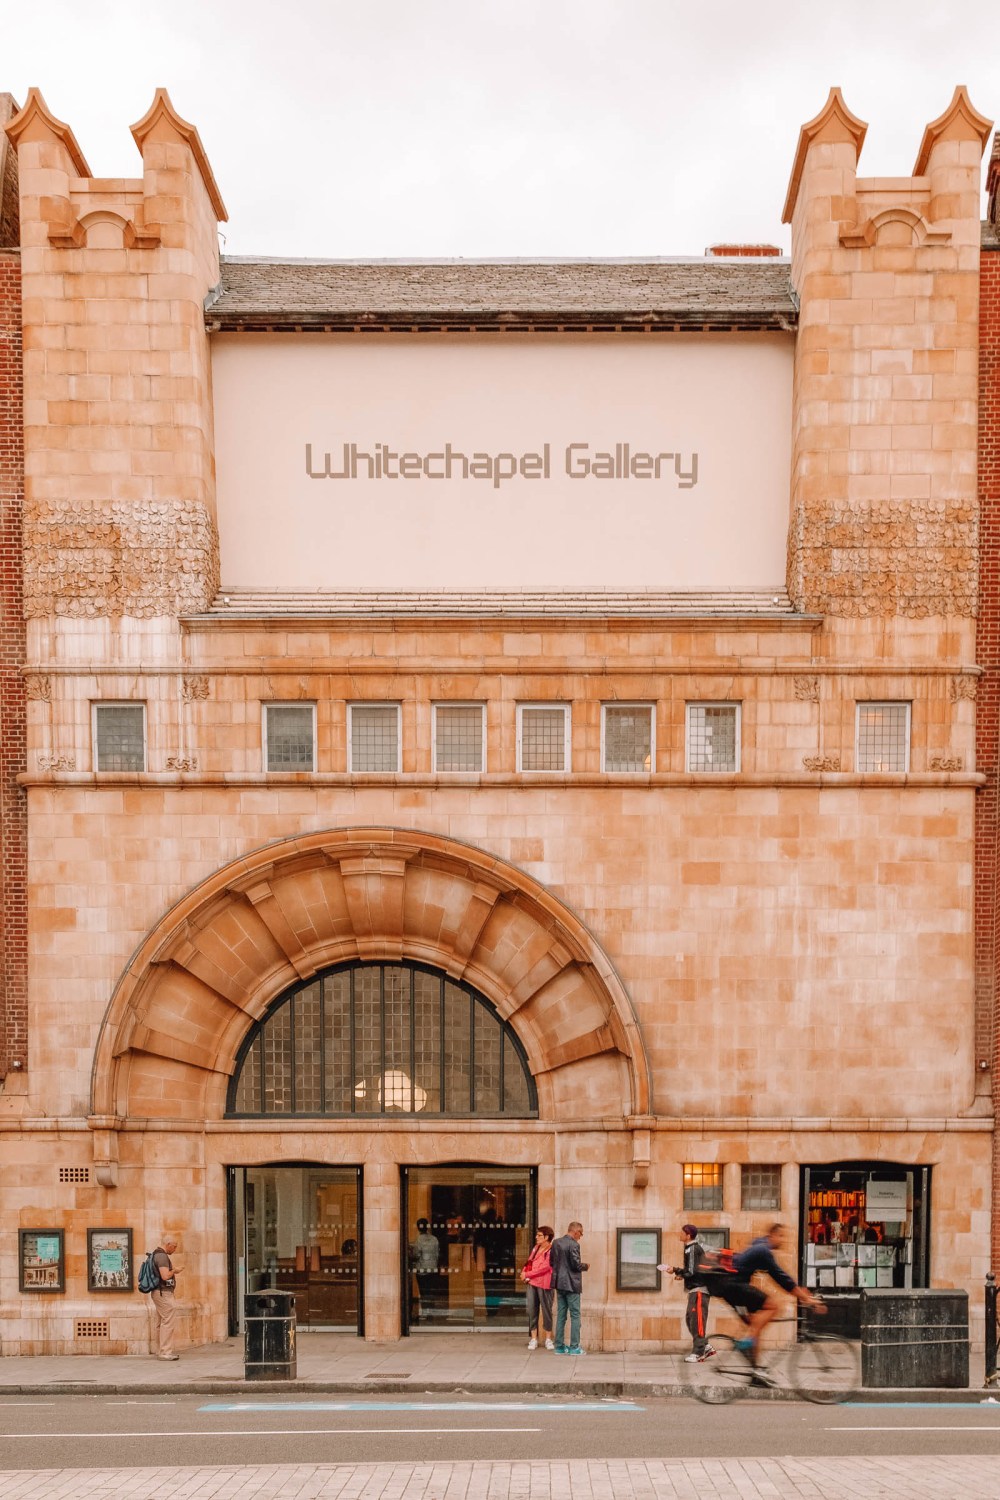 Whitechapel Gallery London